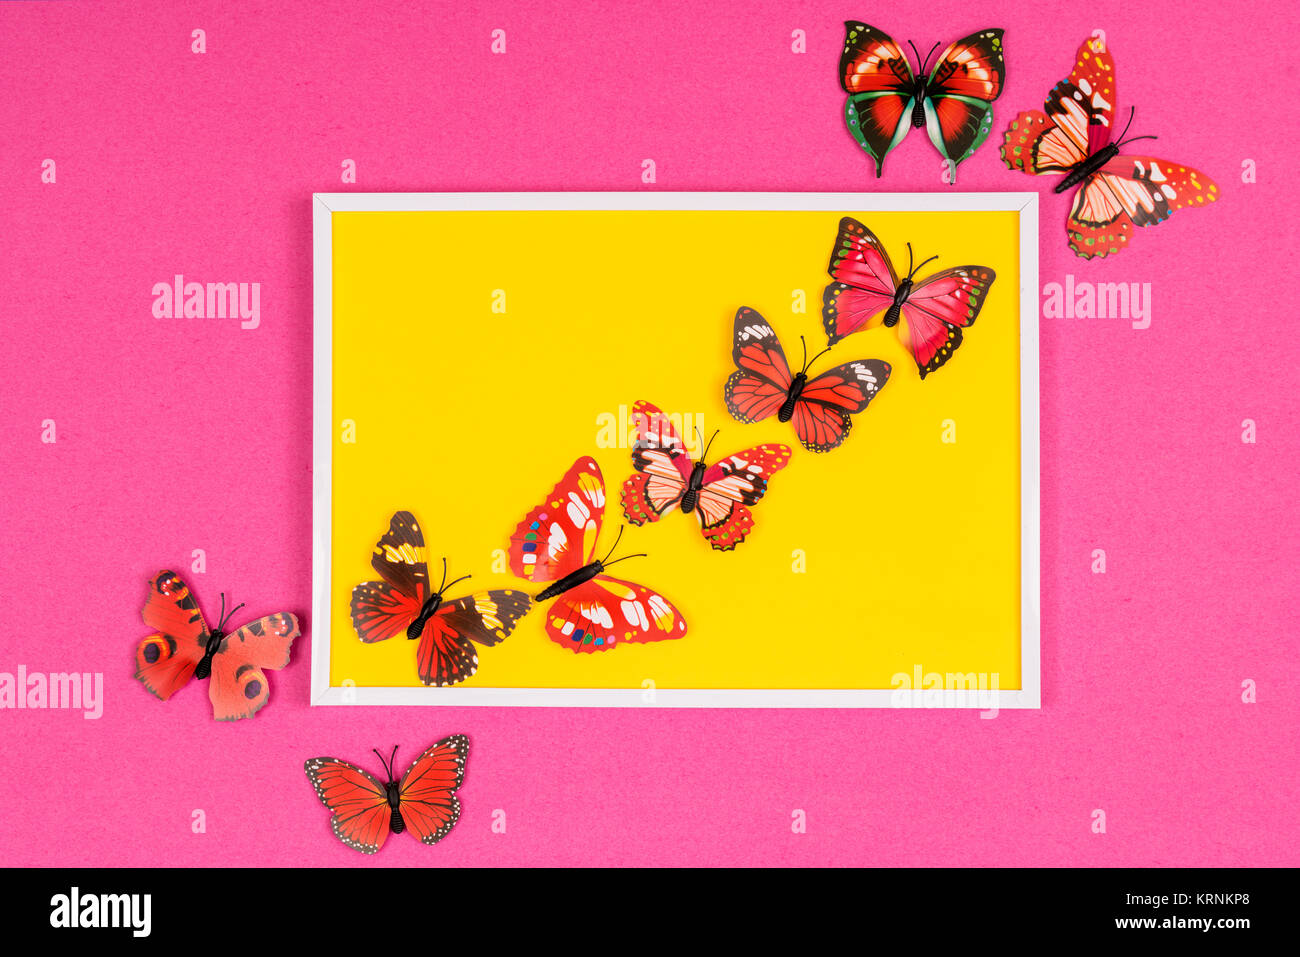 Farfalle decorative immagini e fotografie stock ad alta risoluzione - Alamy